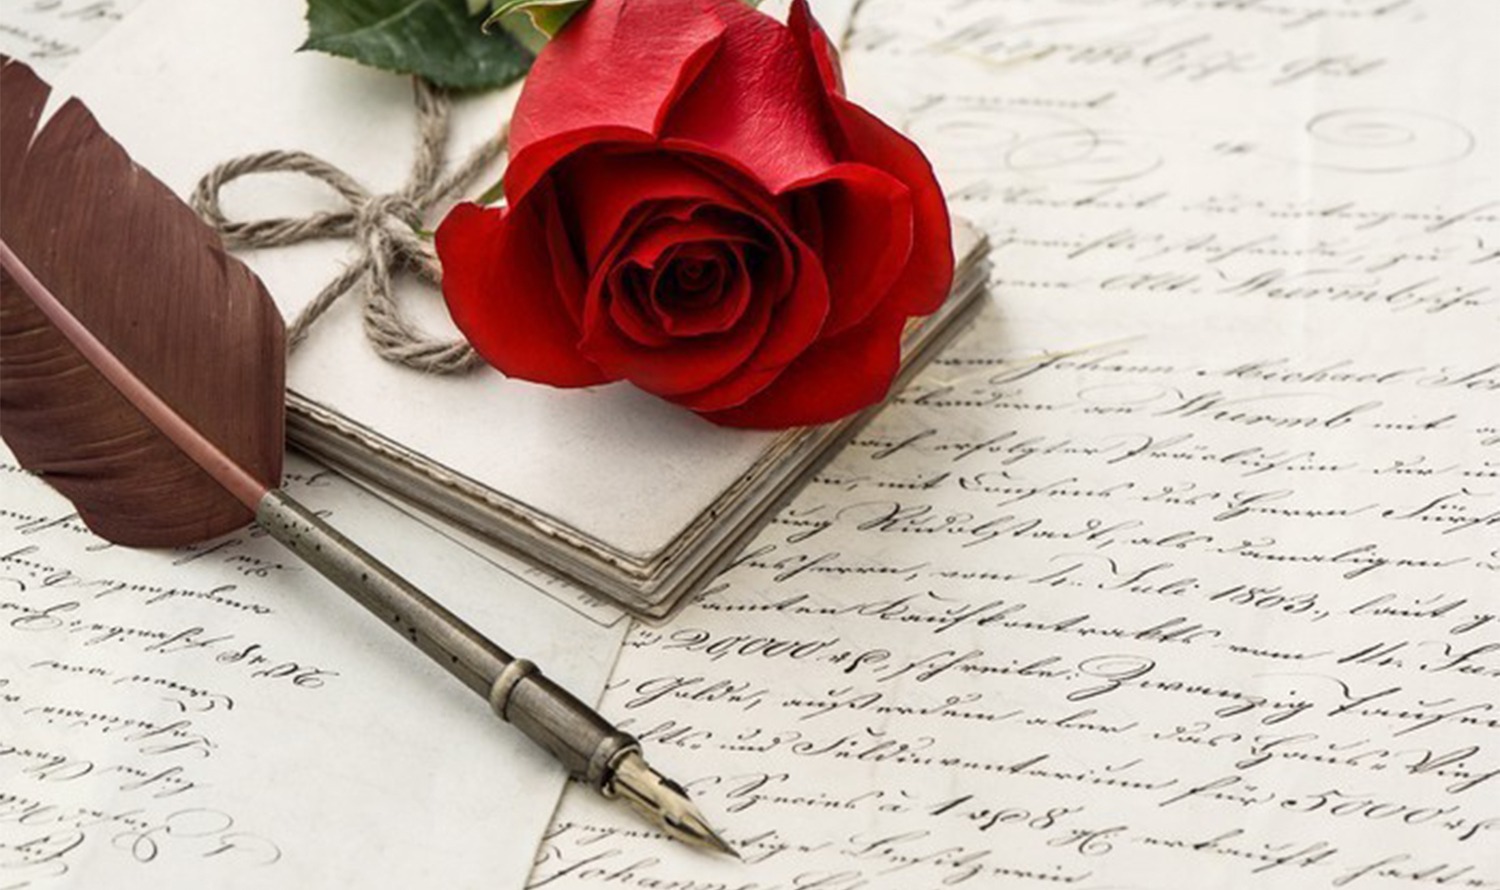 Imaginea prezintă un trandafir roșu, un stilou vechi și mai multe litere scrise de mână, creând o atmosferă nostalgică.